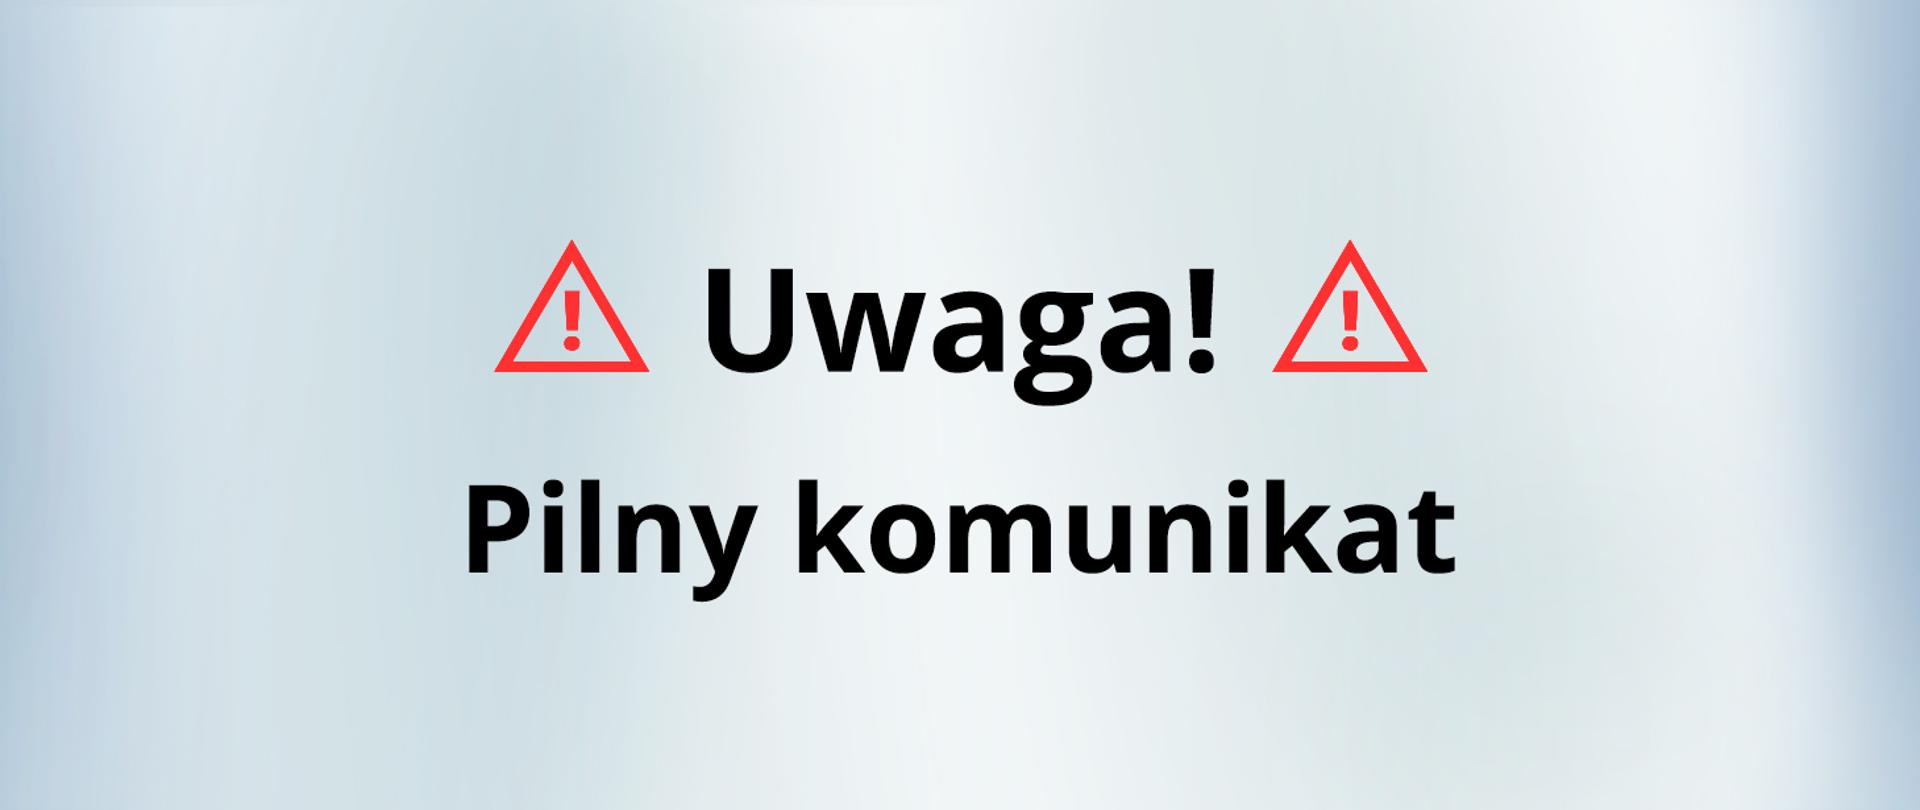 Obrazek z dwoma czerwonymi wykrzyknikami i czarnym napisem "Uwaga! Pilny komunikat"